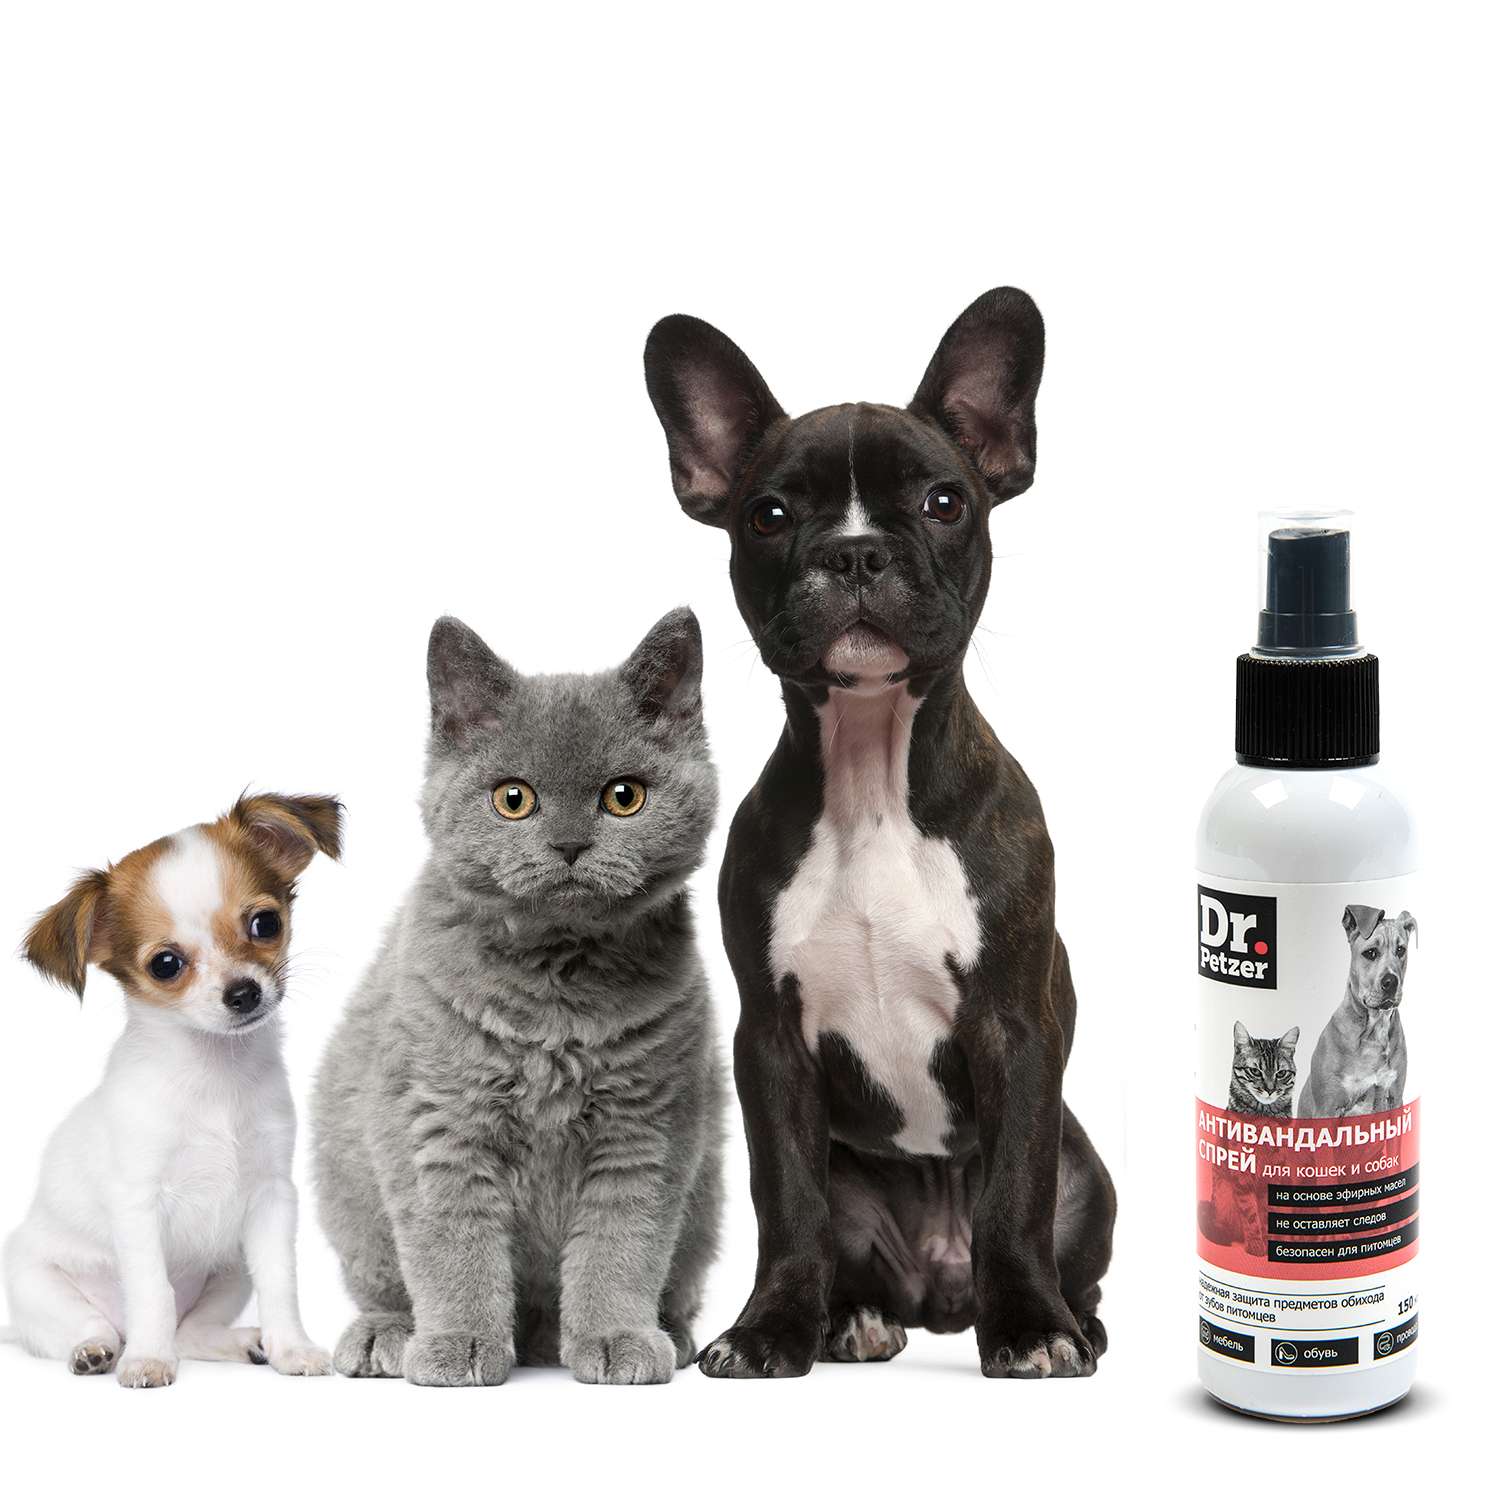 Спрей для кошек и собак Dr.Petzer антивандальный от погрызов и порчи предметов 150мл - фото 2